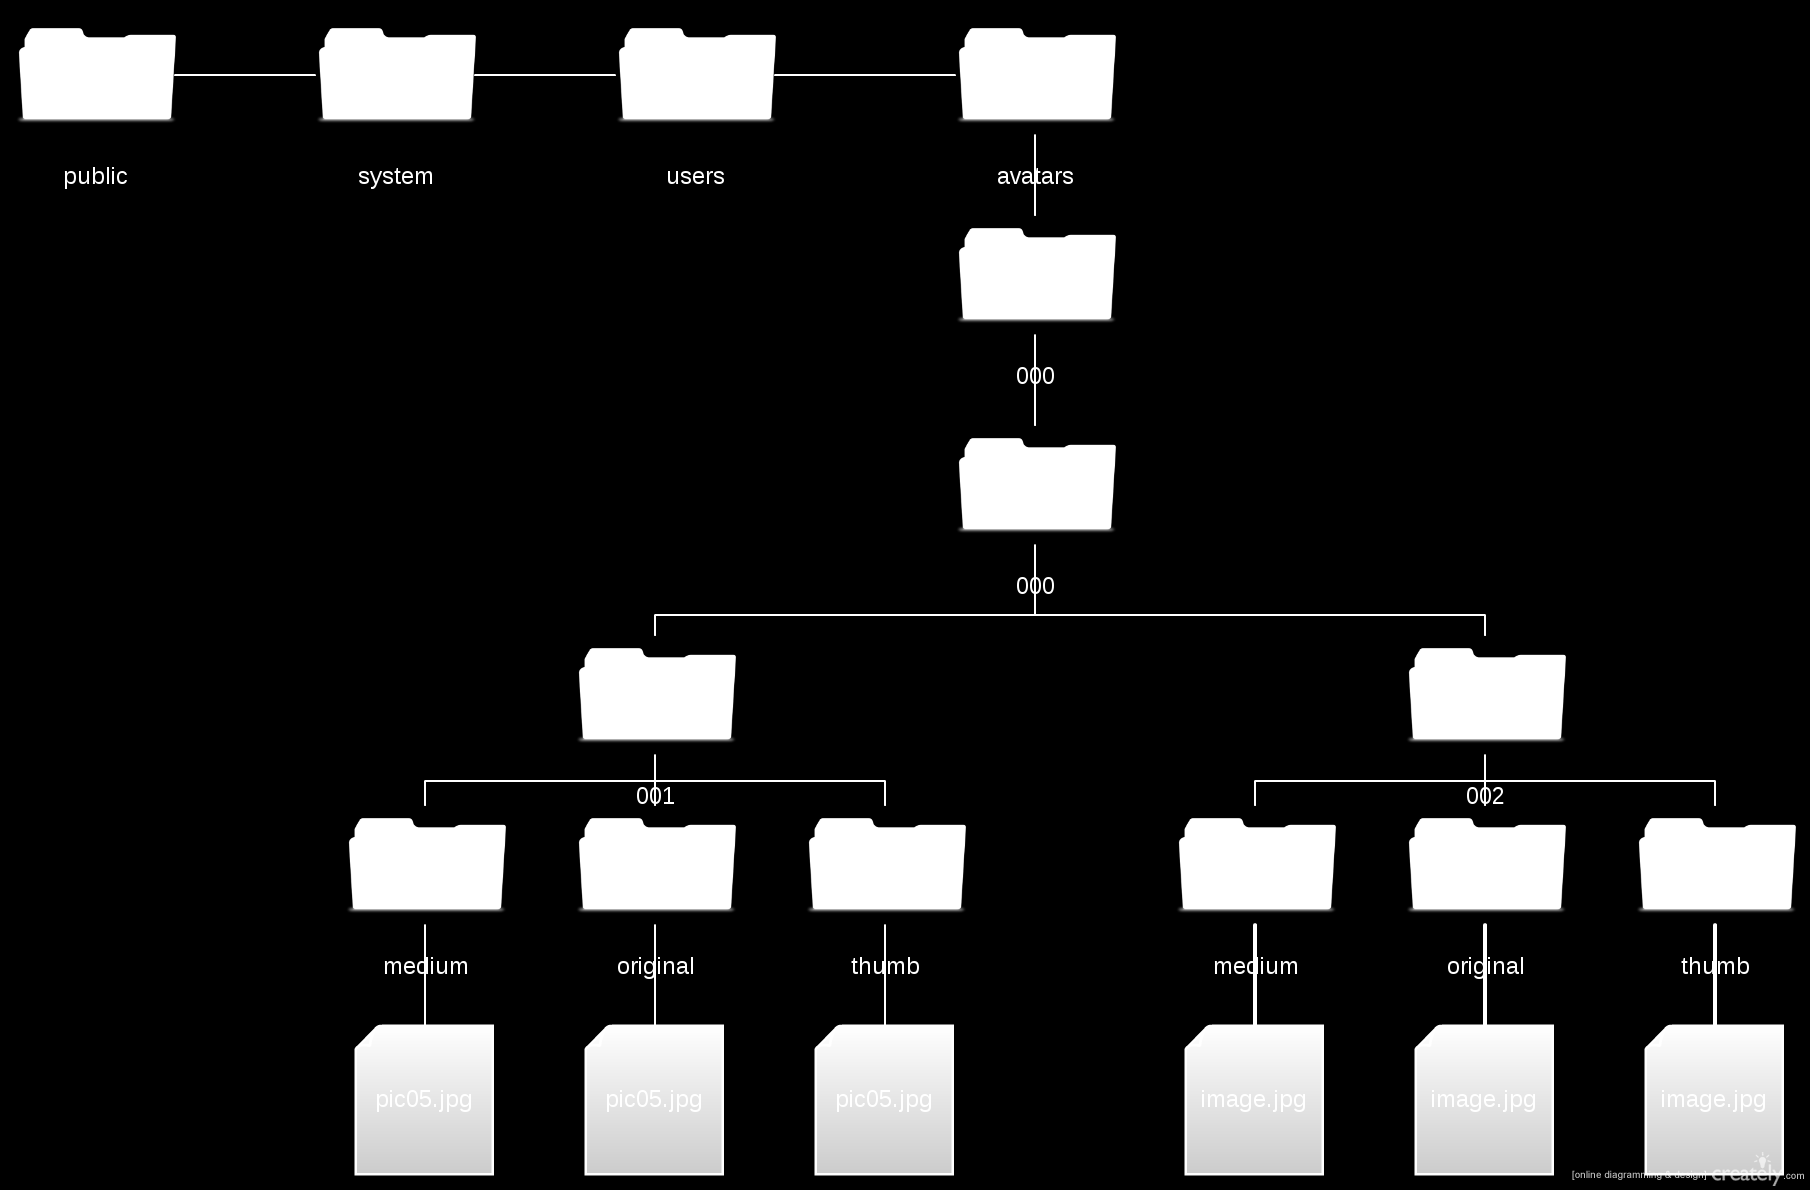 En la figura 24 se expone un árbol de directorios tal y como paperclip organiza los ficheros que los usuarios suben a la aplicación, para que el lector aprecie de forma visual.